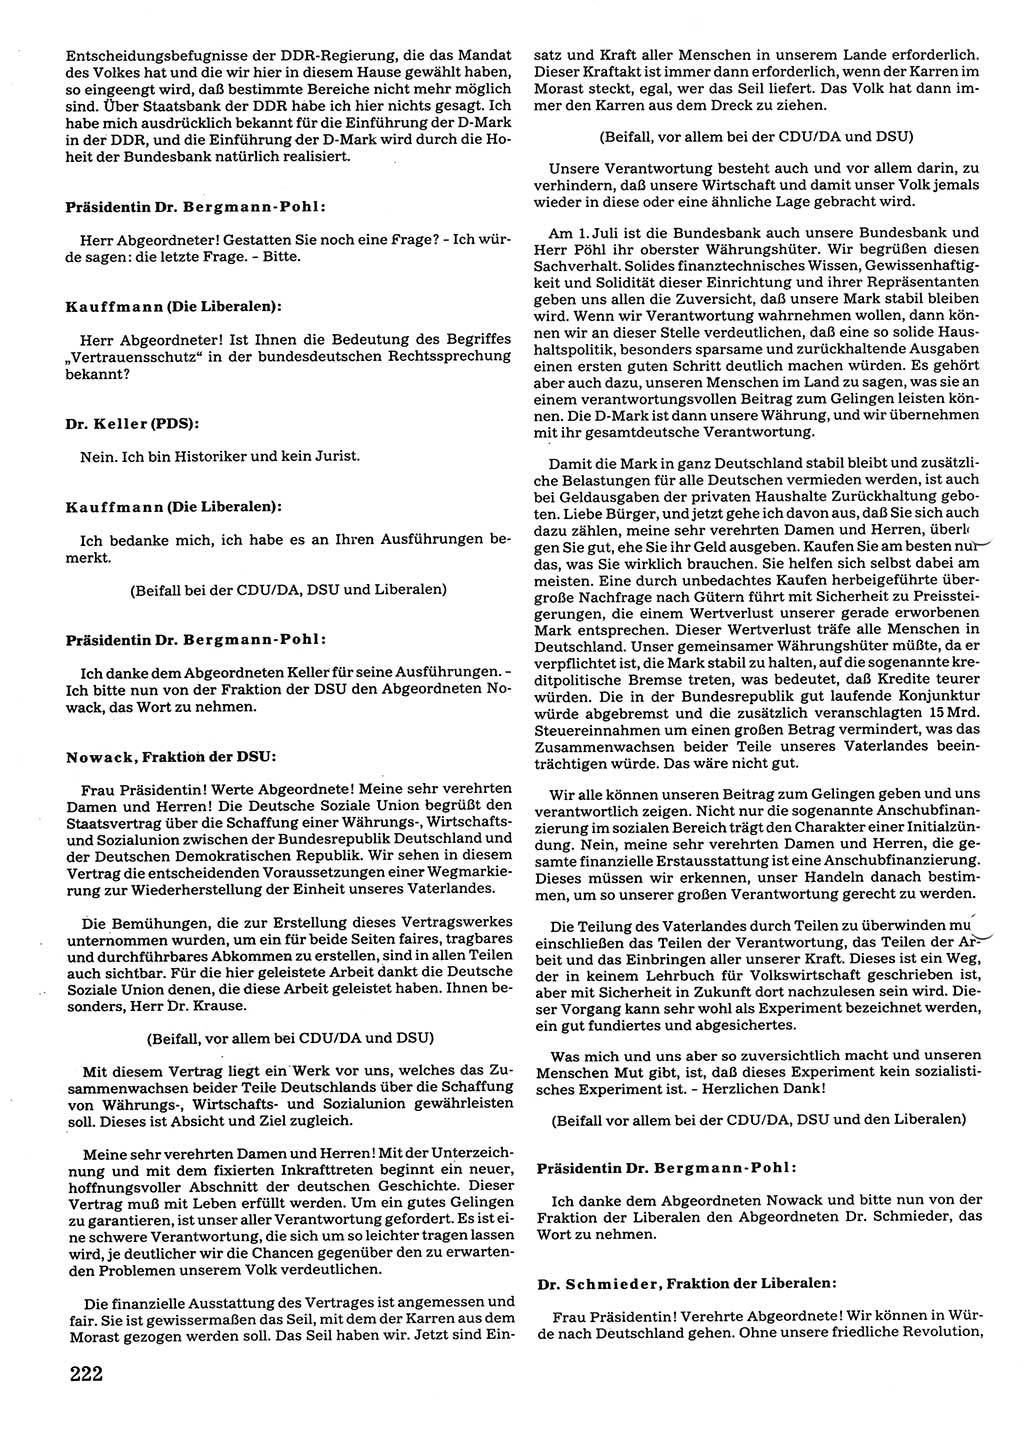 Tagungen der Volkskammer (VK) der Deutschen Demokratischen Republik (DDR), 10. Wahlperiode 1990, Seite 222 (VK. DDR 10. WP. 1990, Prot. Tg. 1-38, 5.4.-2.10.1990, S. 222)